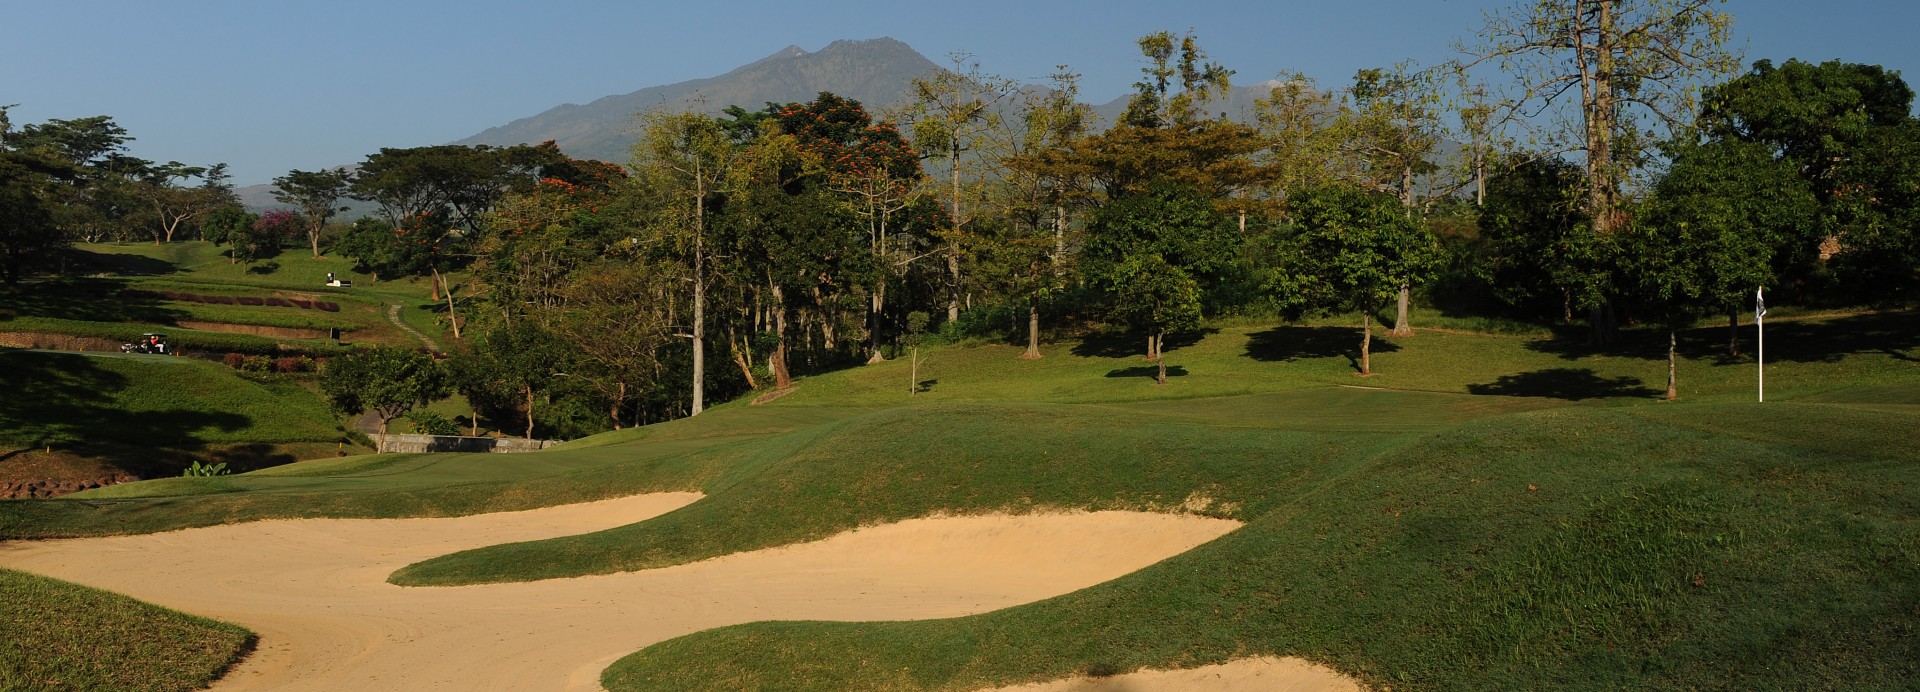 Taman Dayu Golf Club & Resort  | Golfové zájezdy, golfová dovolená, luxusní golf